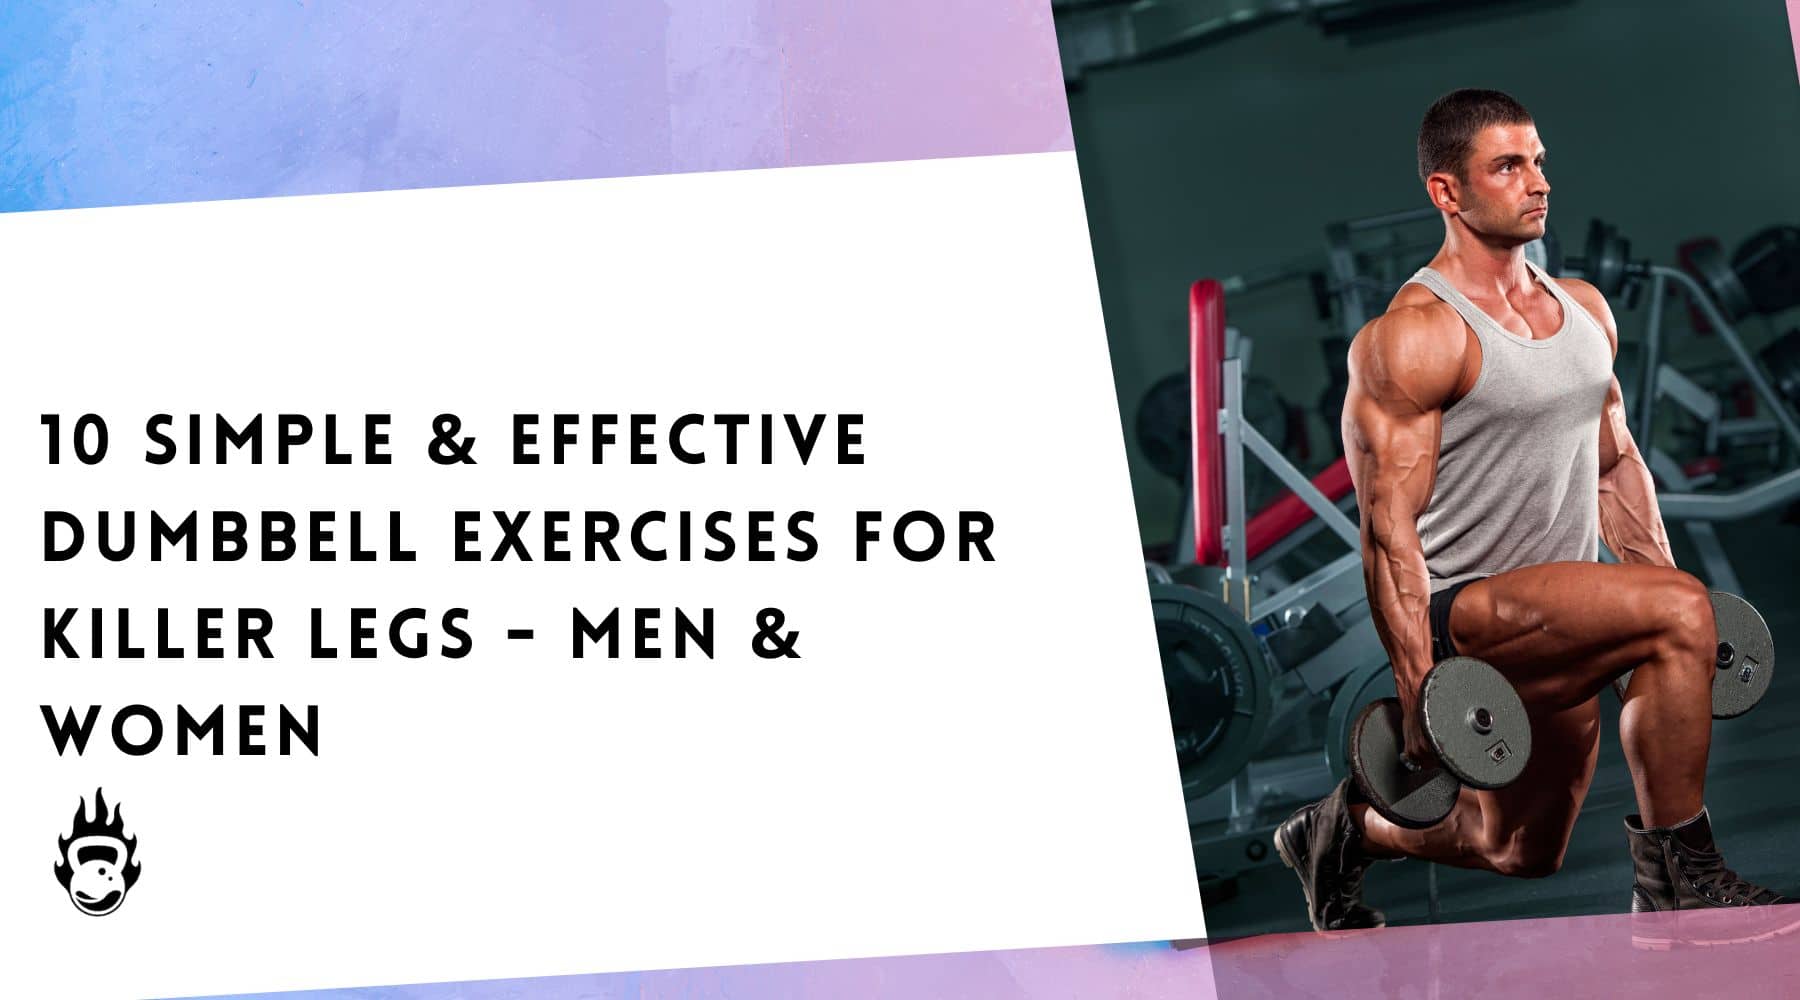 10 Simple & Effective Dumbbell Exercises For Killer Legs - Men & Women